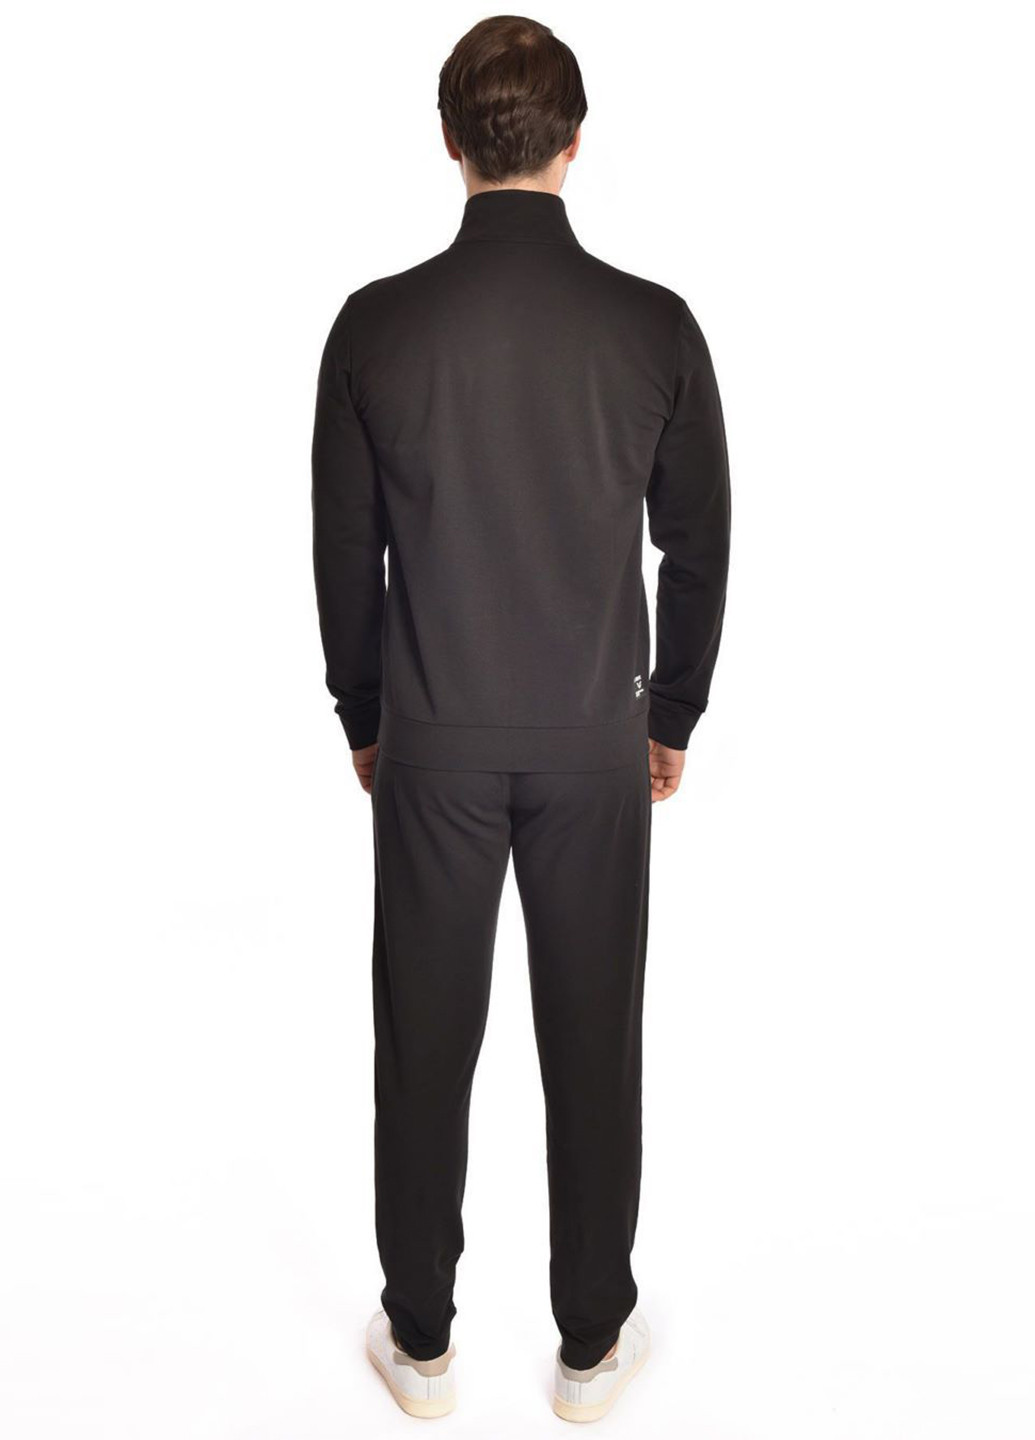 Черный демисезонный костюм (толстовка, брюки) брючный Bilcee